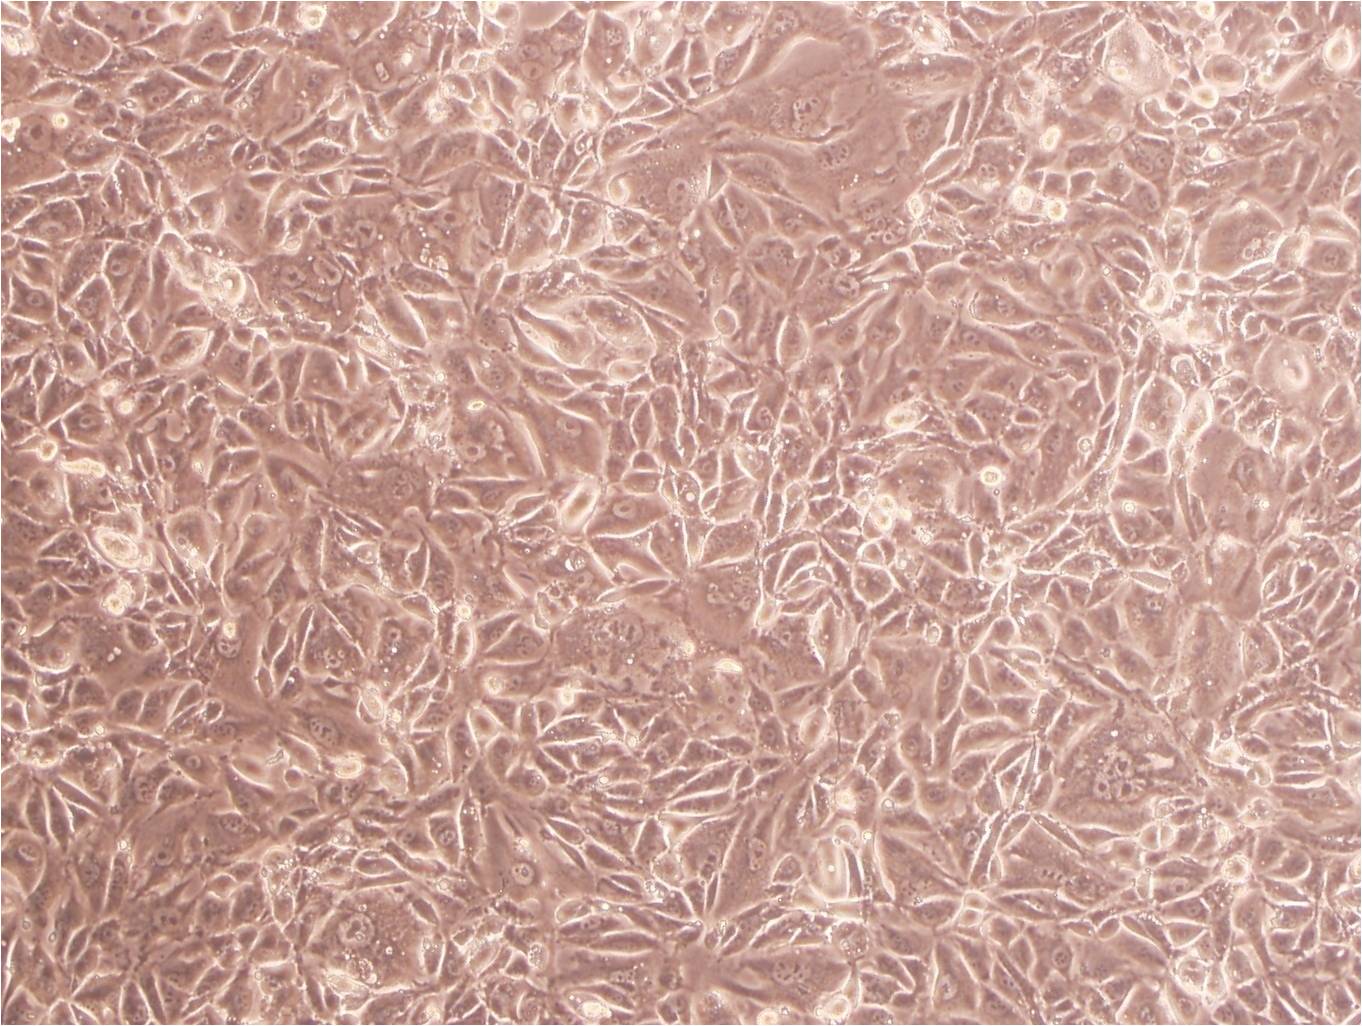 WTRL1 Cell|大鼠肺细胞,WTRL1 Cell